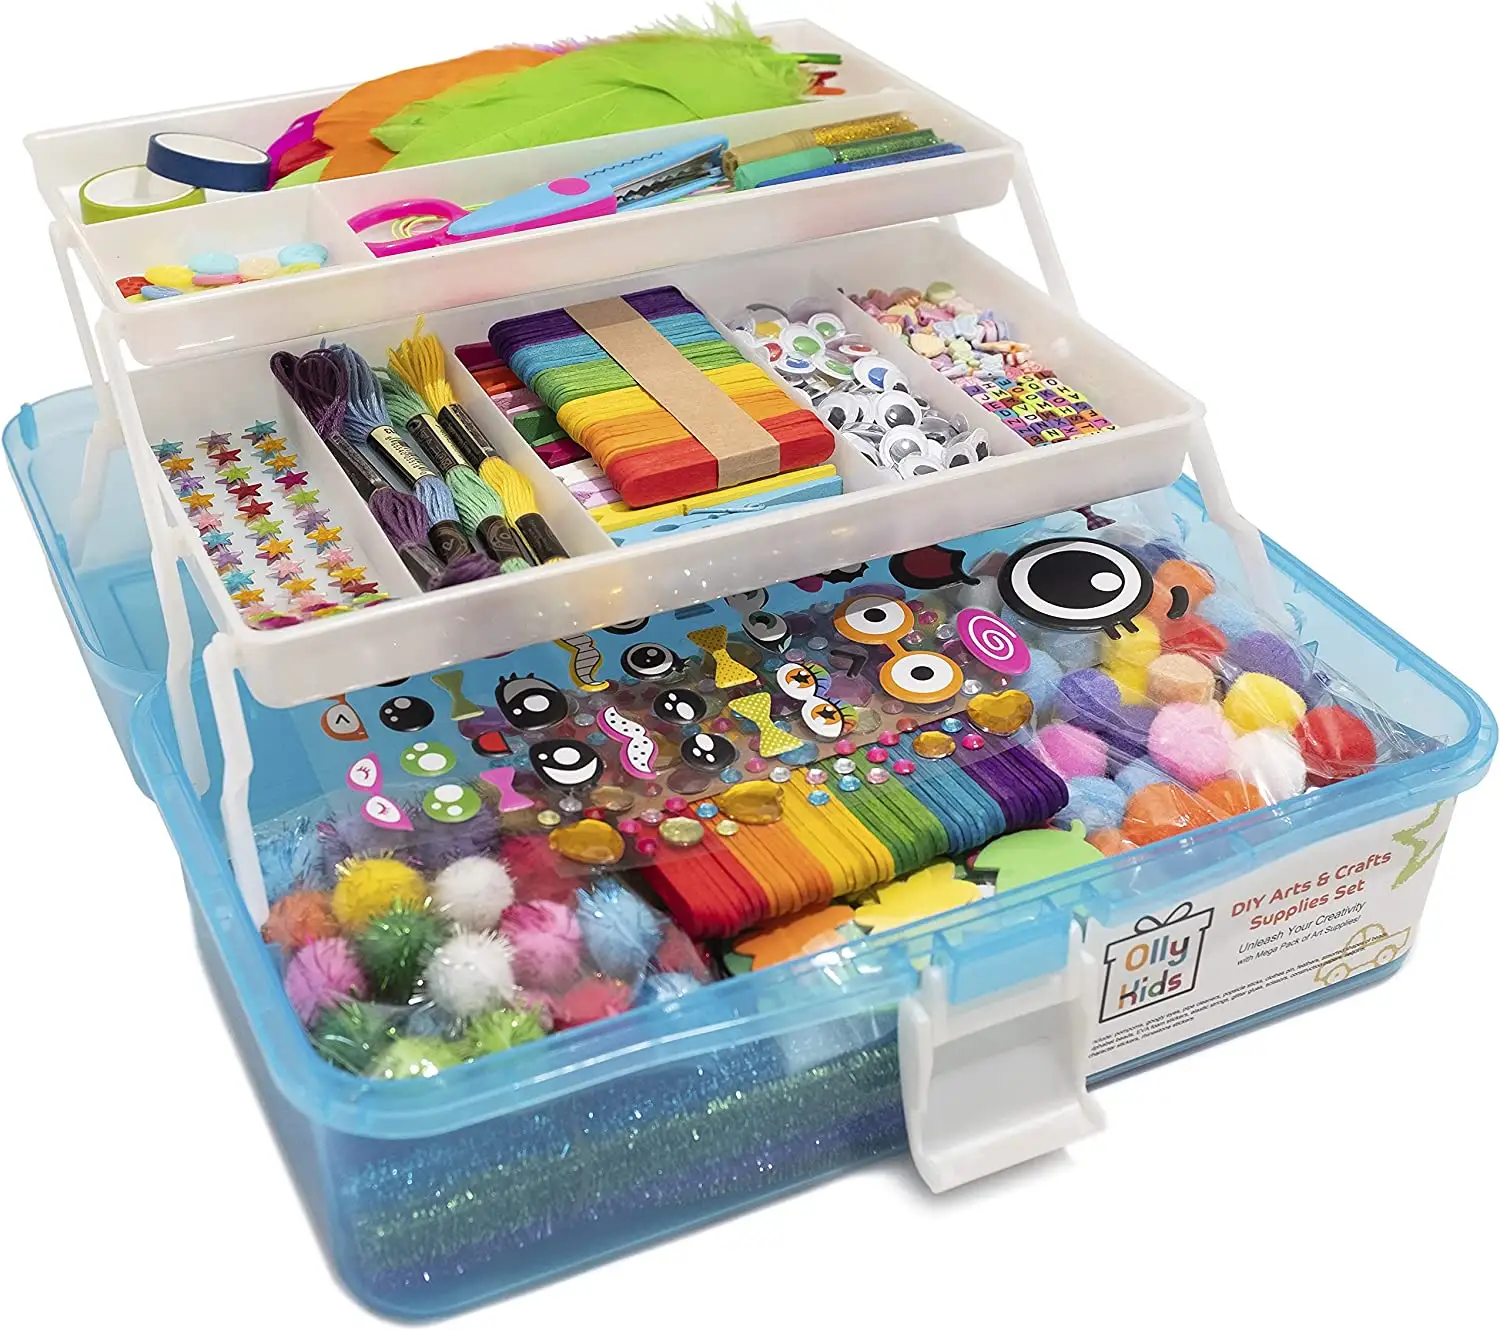 Hot Sale DIY Craft Kit mit drei schicht igen Falt schachtel Kids Art Sets 1000 Stück für Kinder & Kleinkinder Craft Art Ser